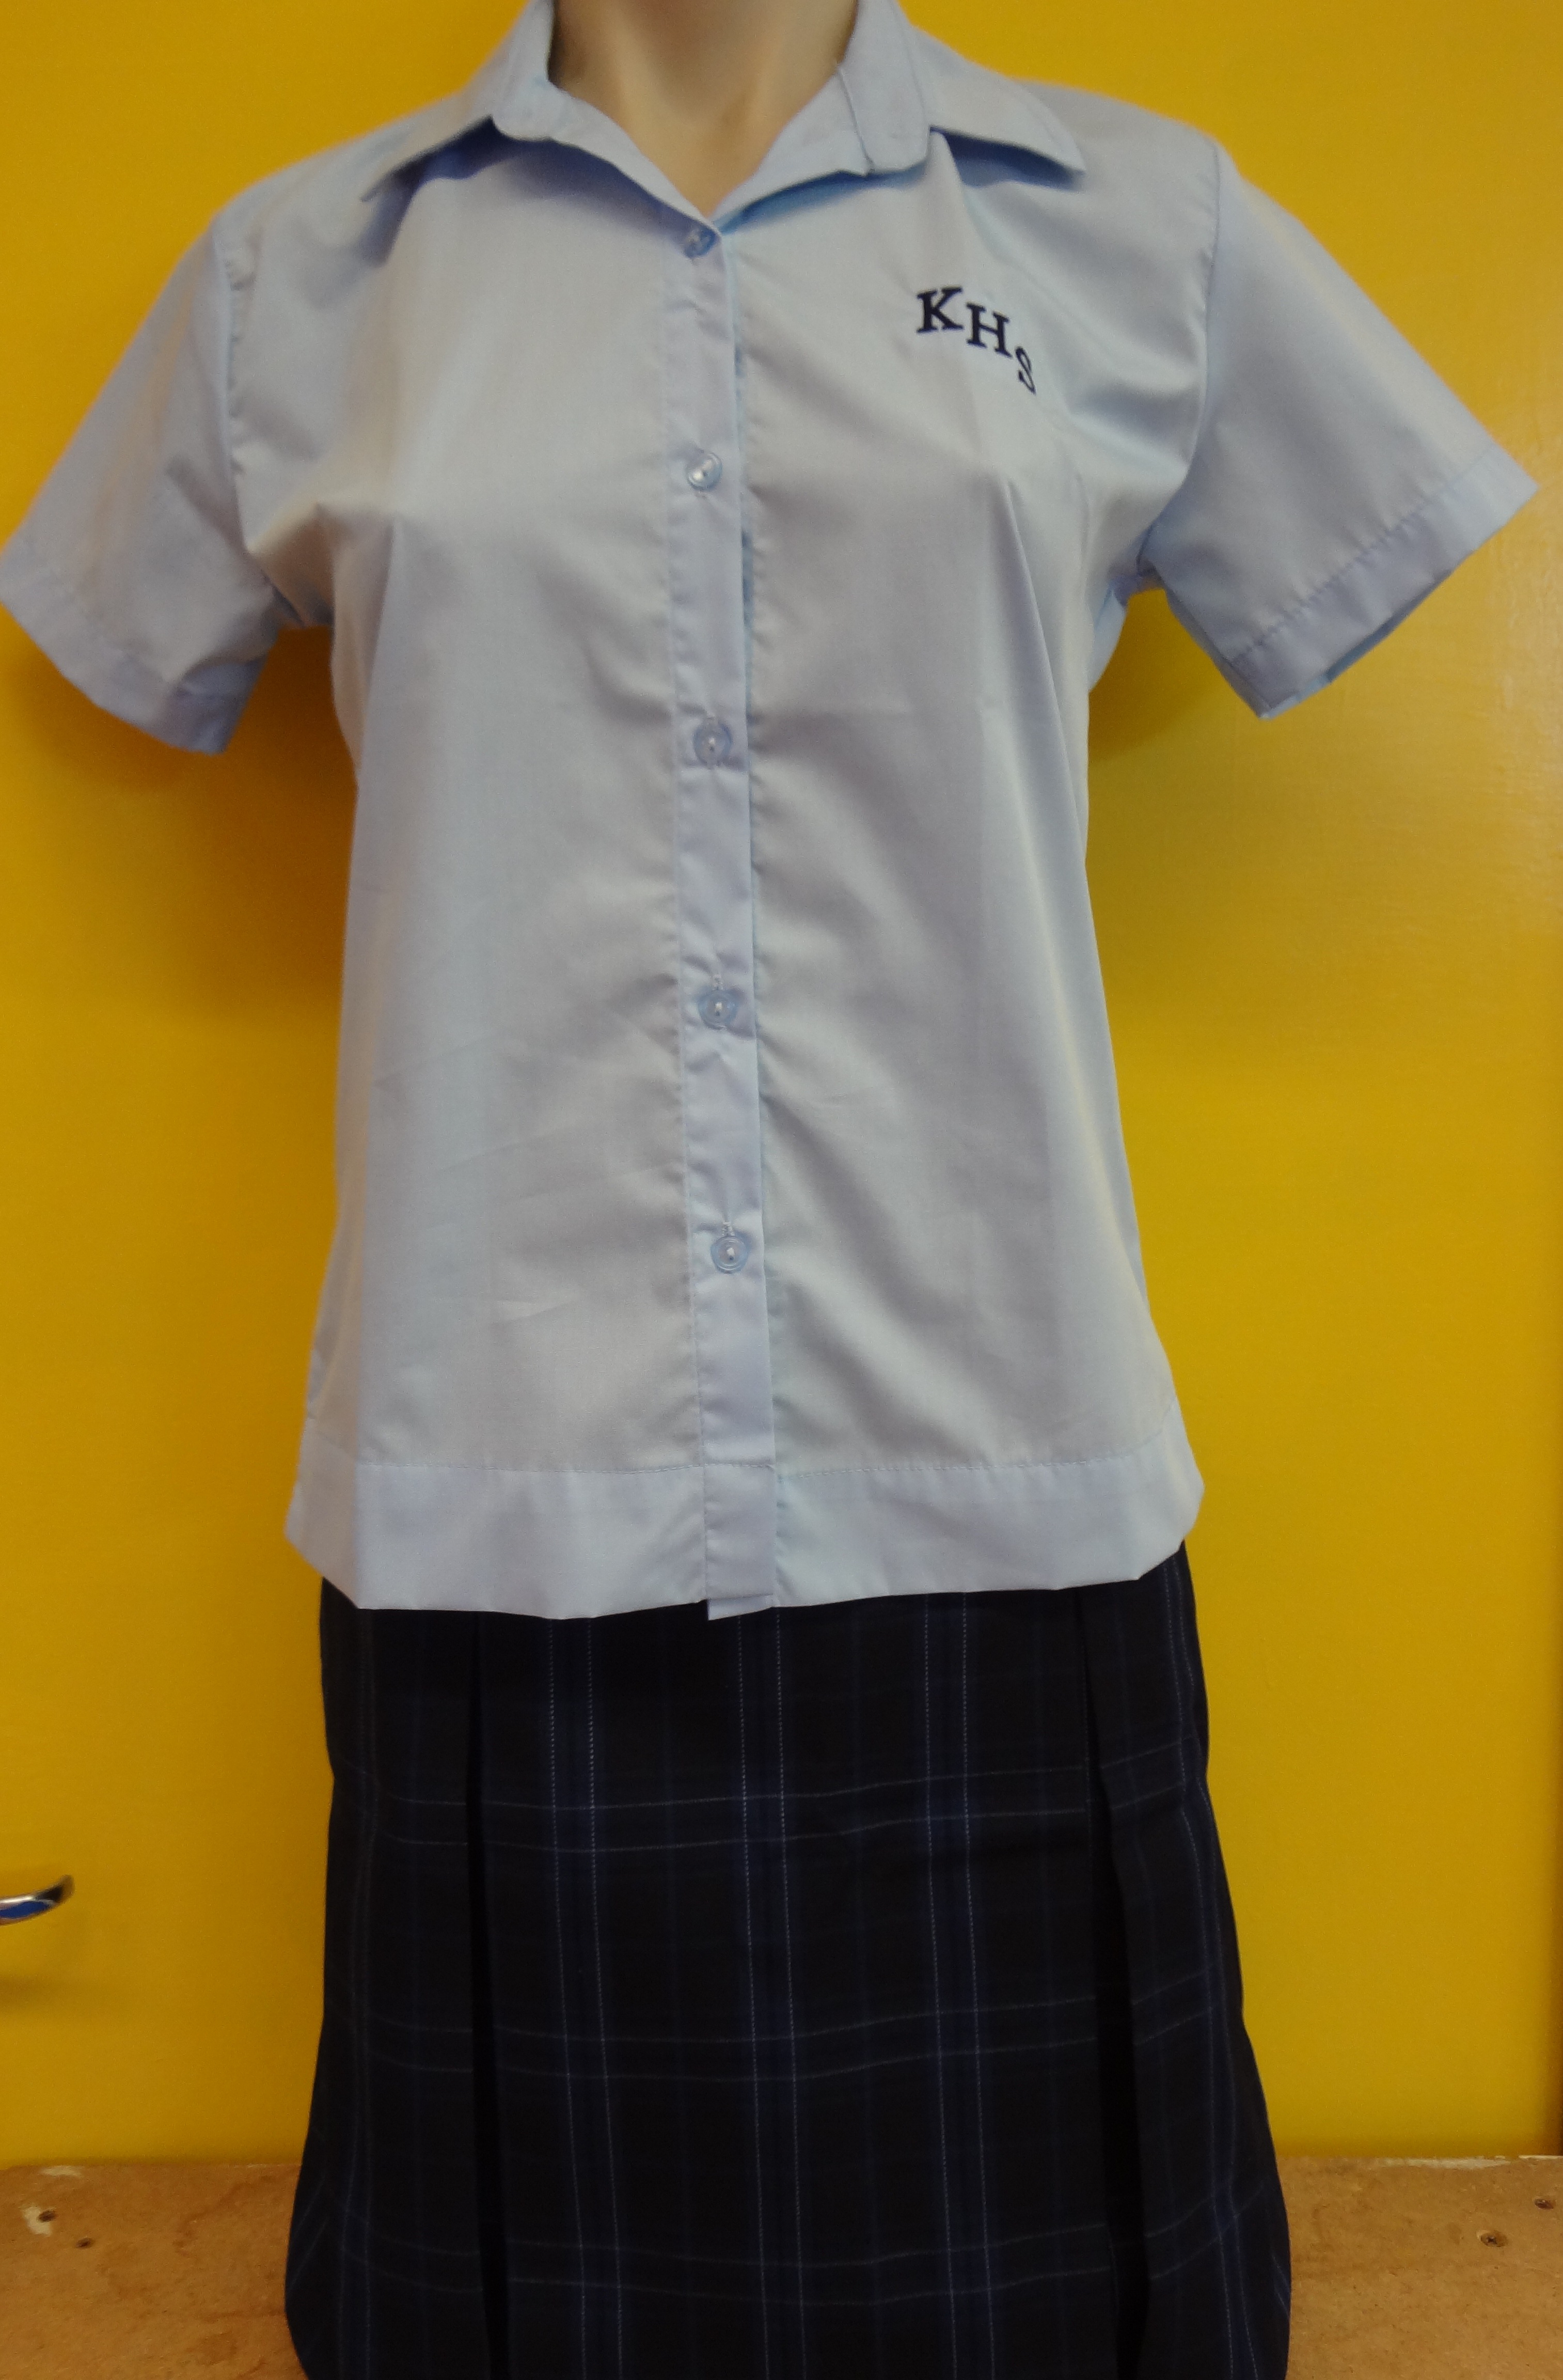 Junior girl's blouse and skirt